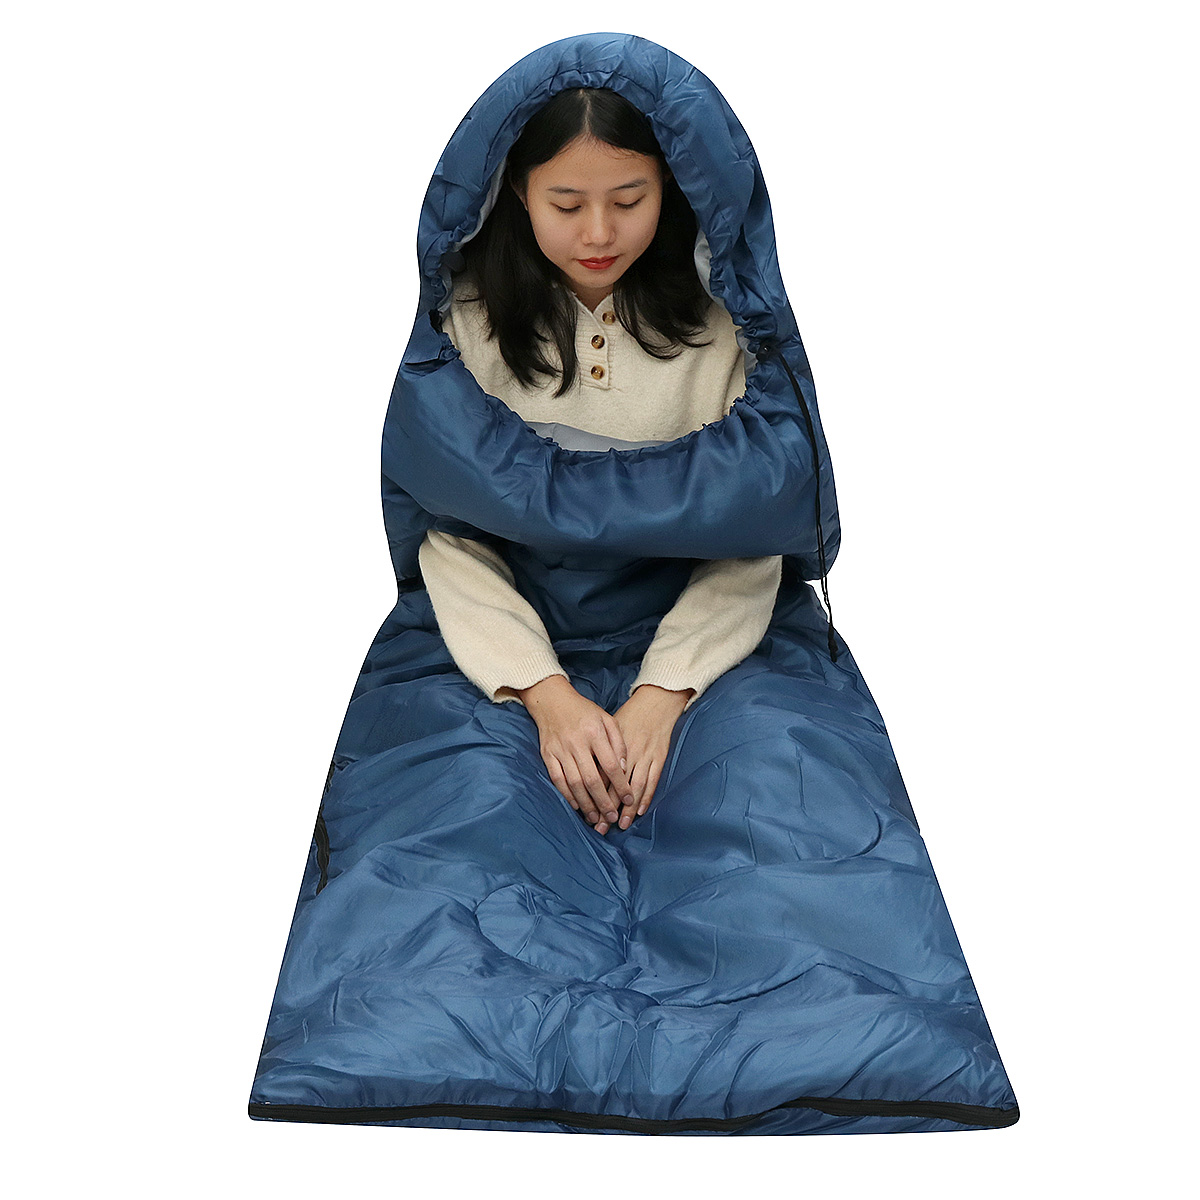 10x75CM-Waterproof-Camping-Envelope-Sleeping-Bag-Outdoor-Hiking-Backpacking-Sleeping-Bag-with-Compre-1647670-1